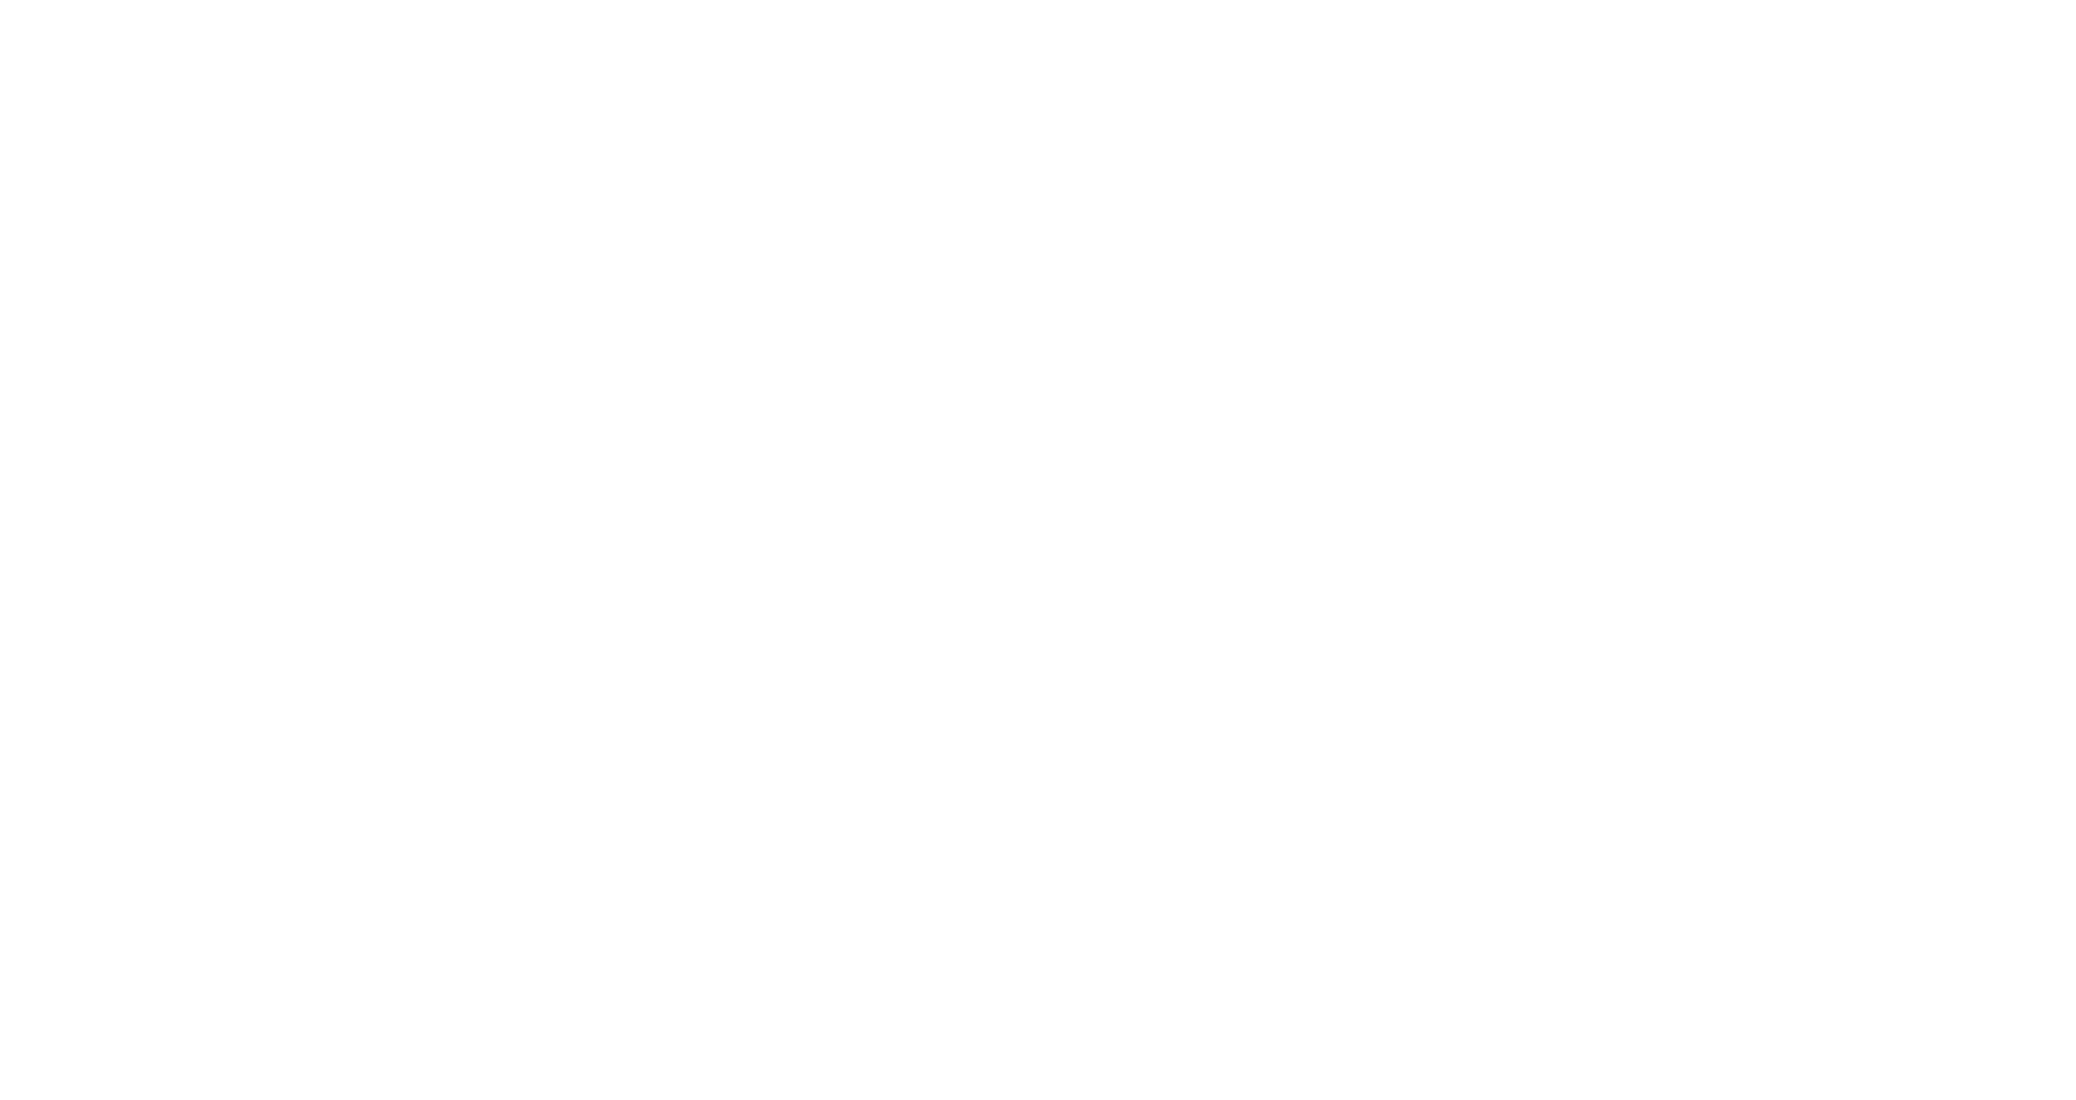 RLXD.NL